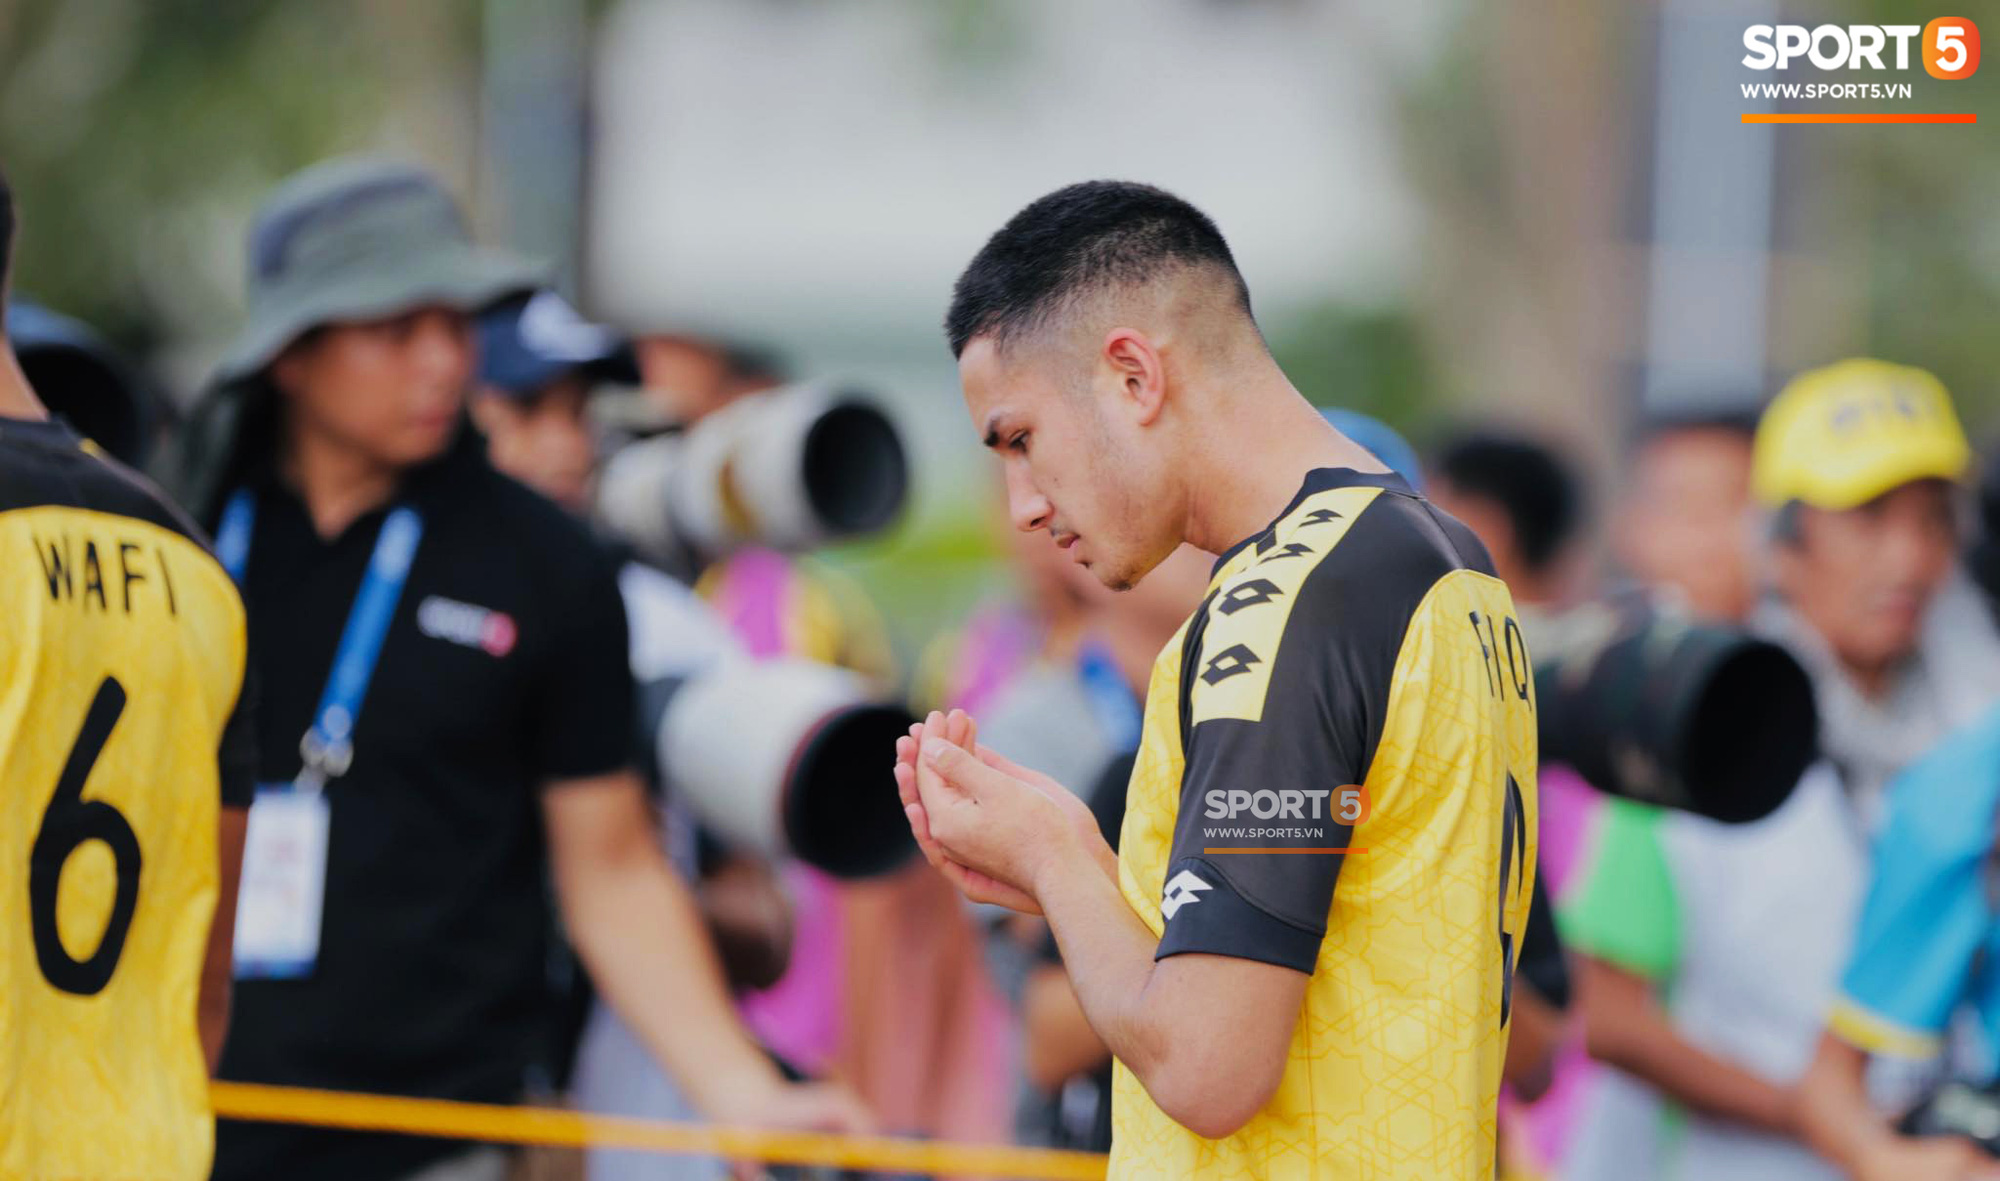 HLV Park Hang-seo bức xúc vì pha lật kèo của U22 Brunei: Cầu thủ giàu nhất thế giới không được đăng ký nhưng lại bất ngờ ra sân đá chính một cách đầy khó hiểu - Ảnh 5.